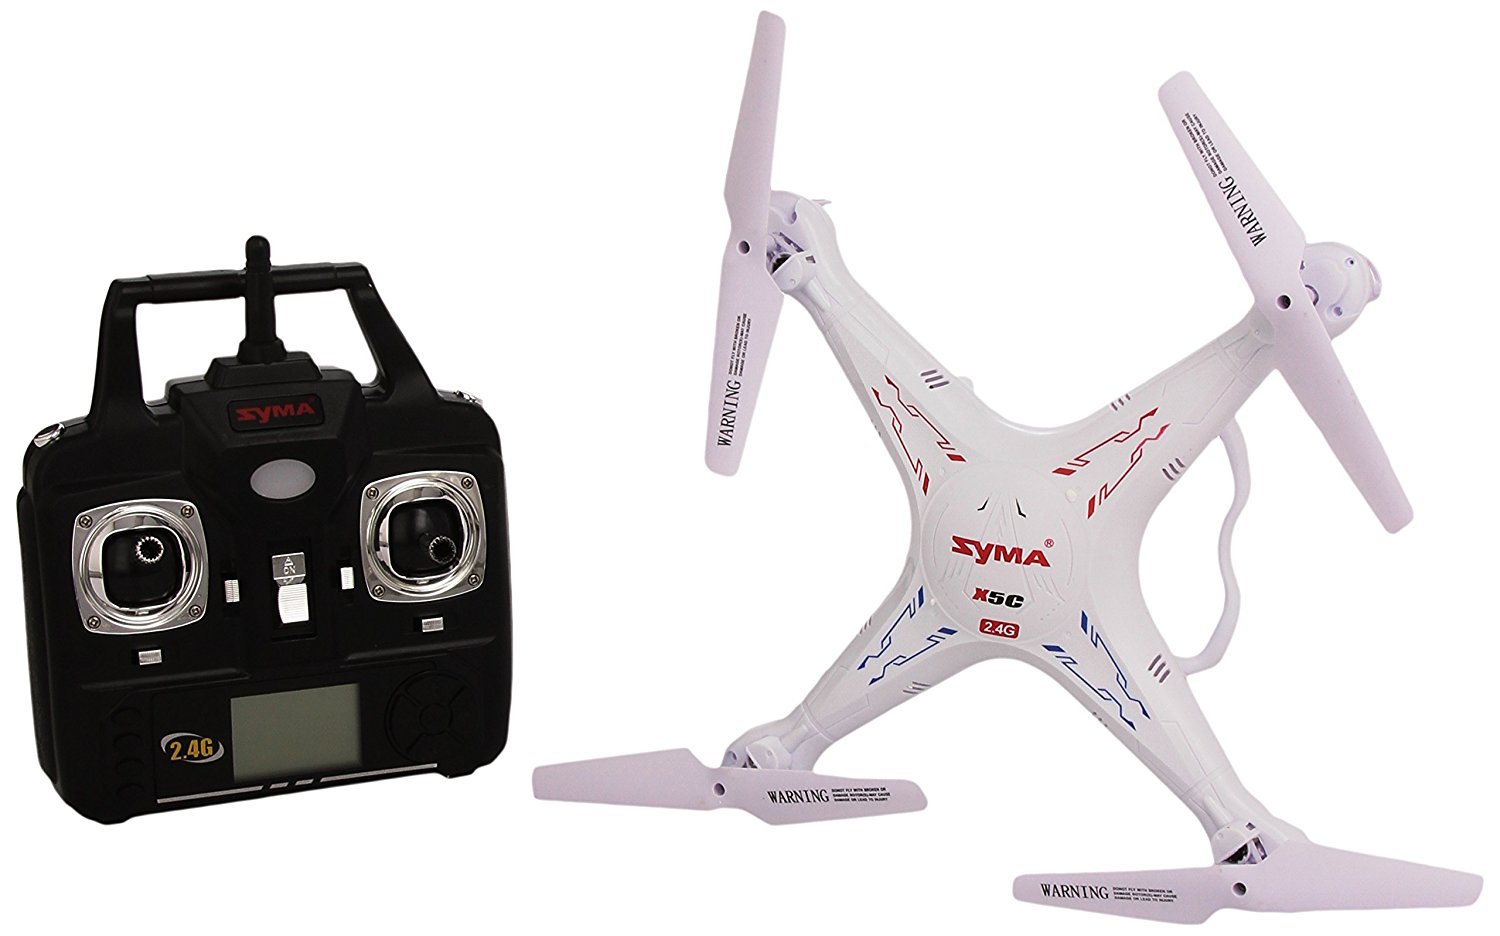 Syma X5C-1 - Los mejores drones y los más baratos - Especial de Gizlogic